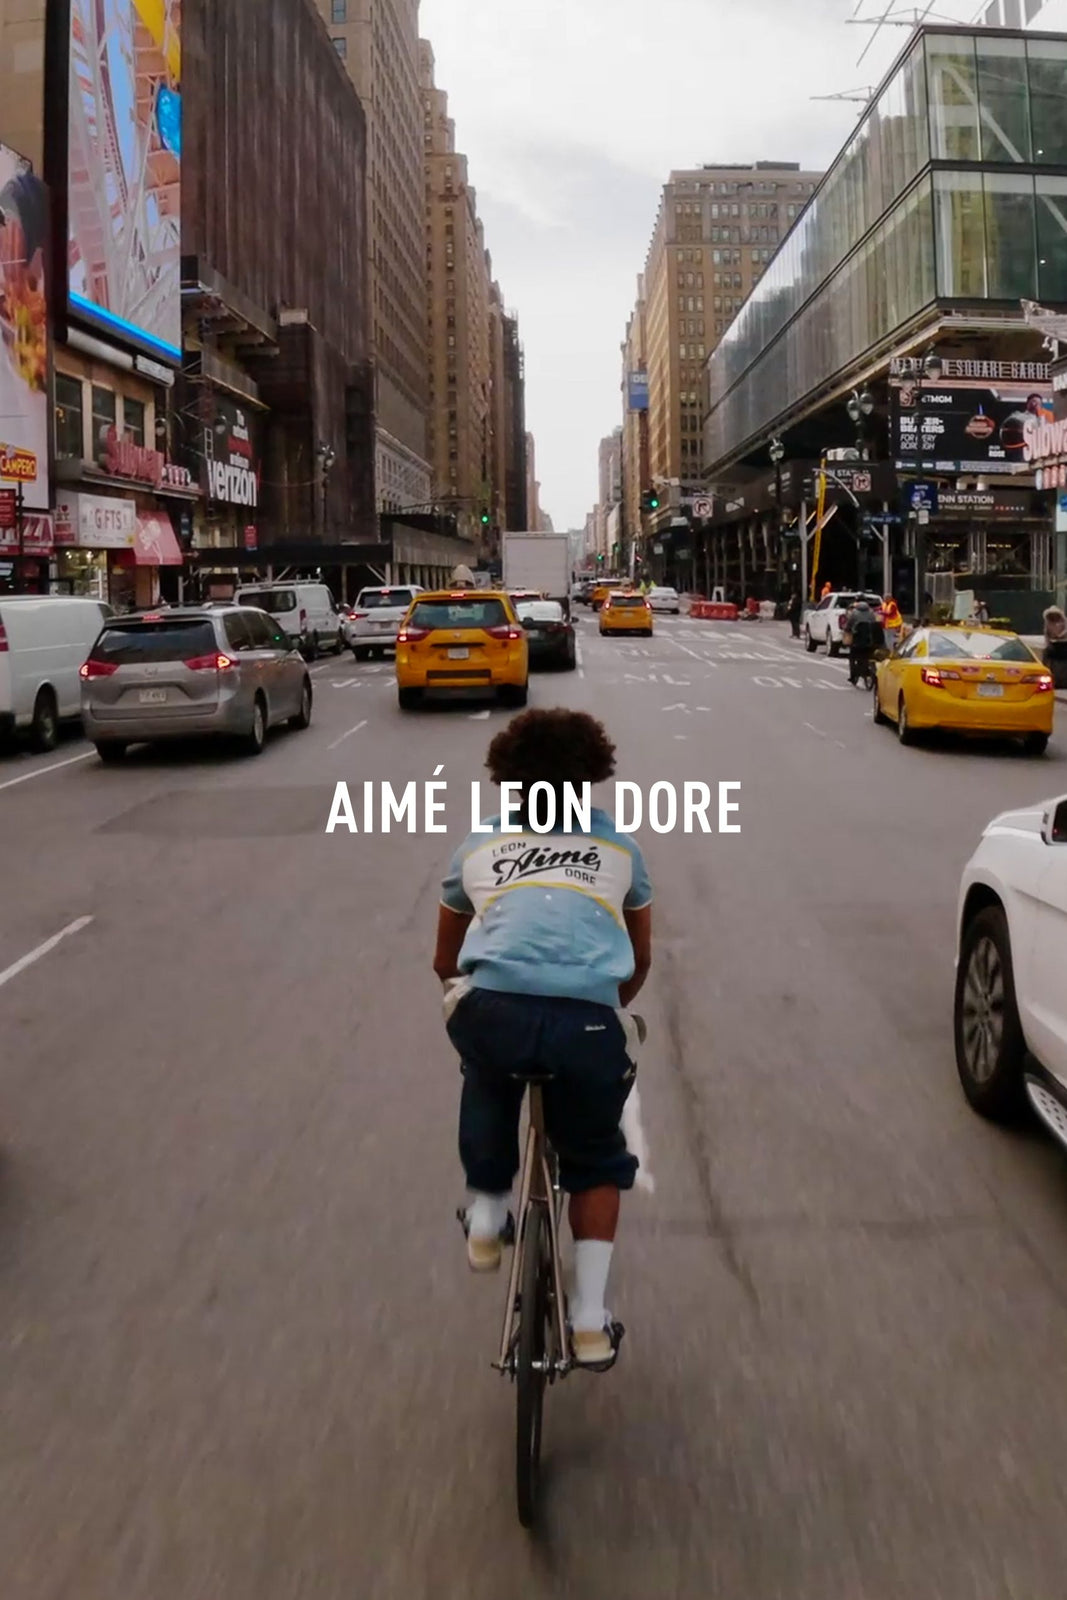 Aimé Leon Dore F/W 2018 Preview – Shop Franchise